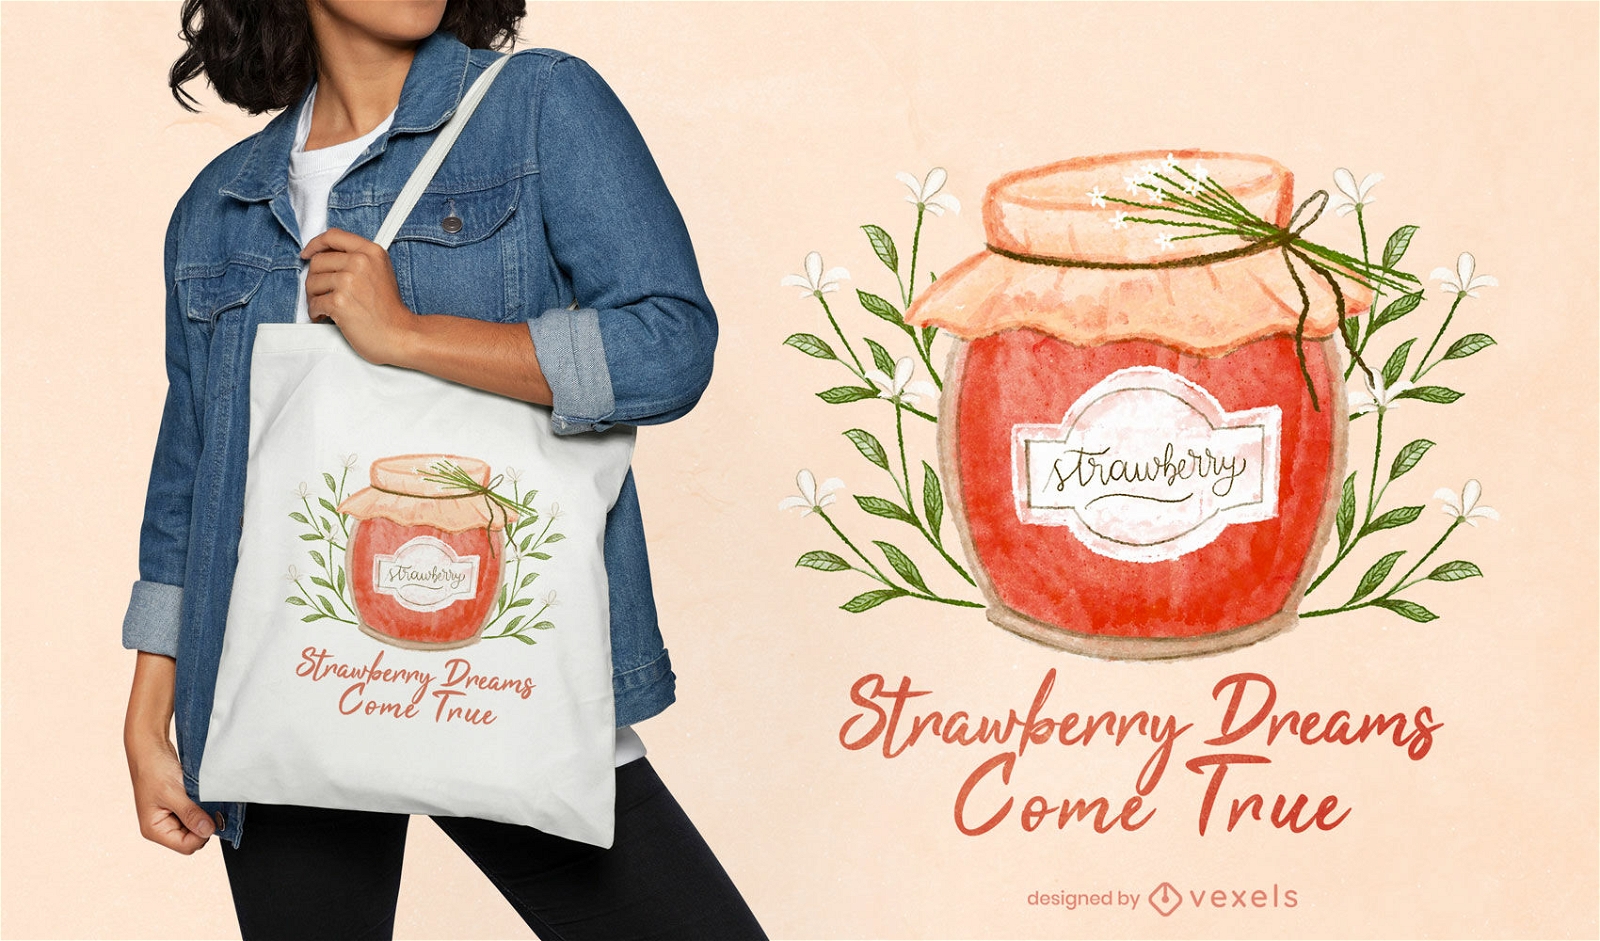 Strawberry dreams tote bag design